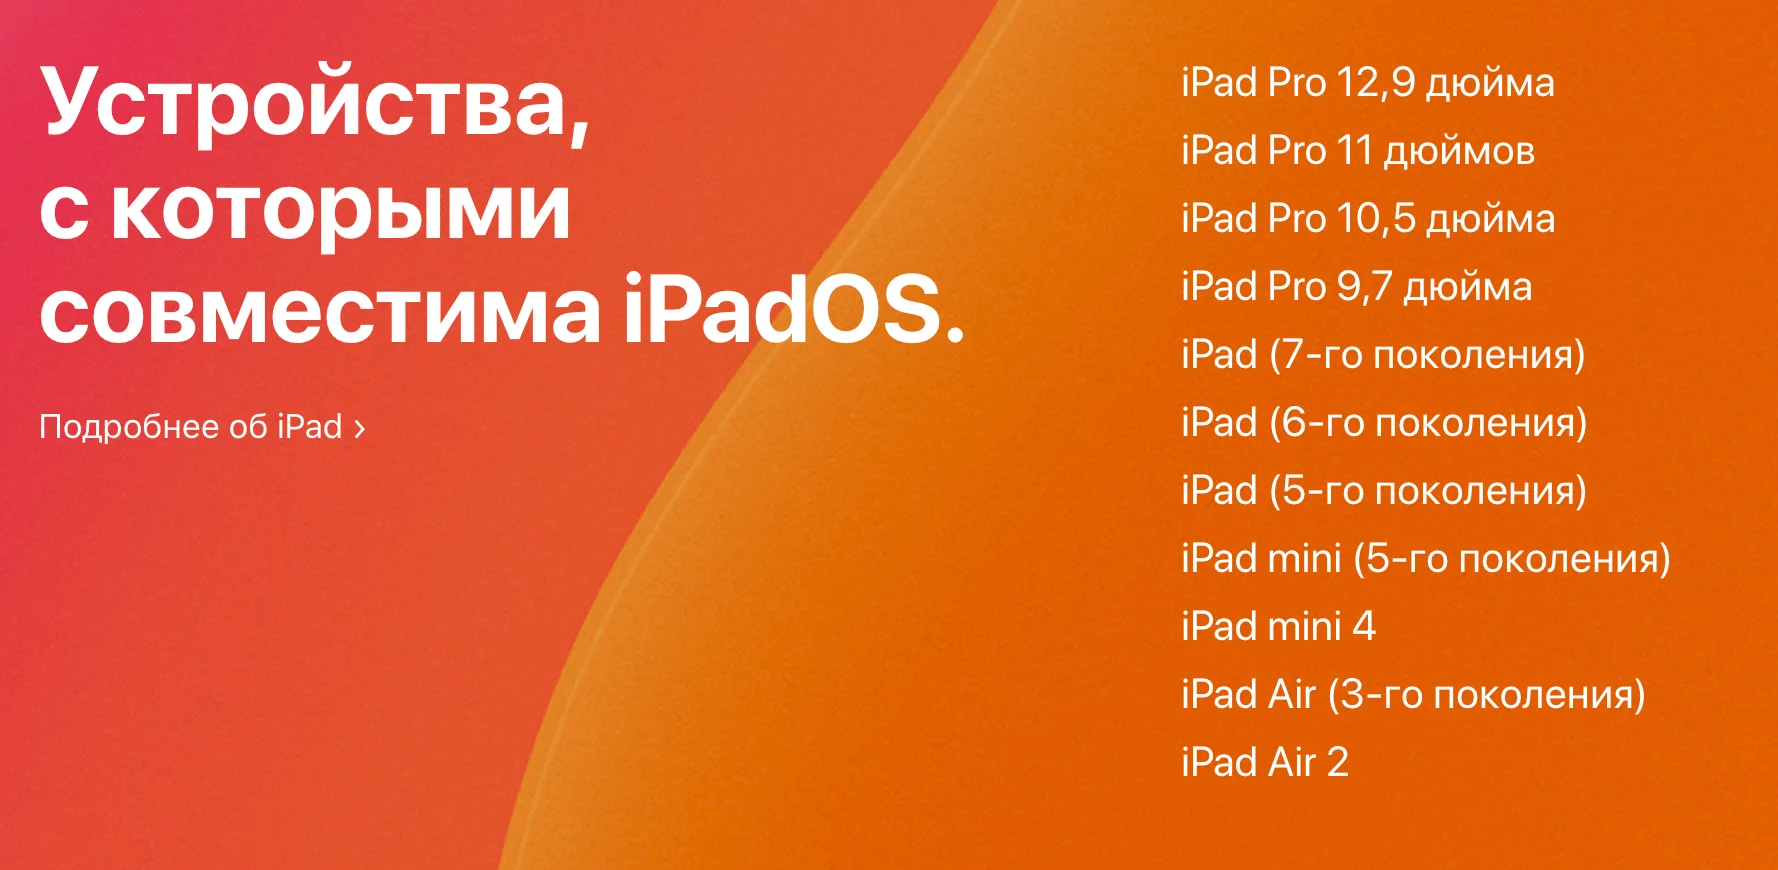 Apple представила iOS 13.1, iPadOS 13.1 и tvOS 13: что нового и кто обновится - фото 3